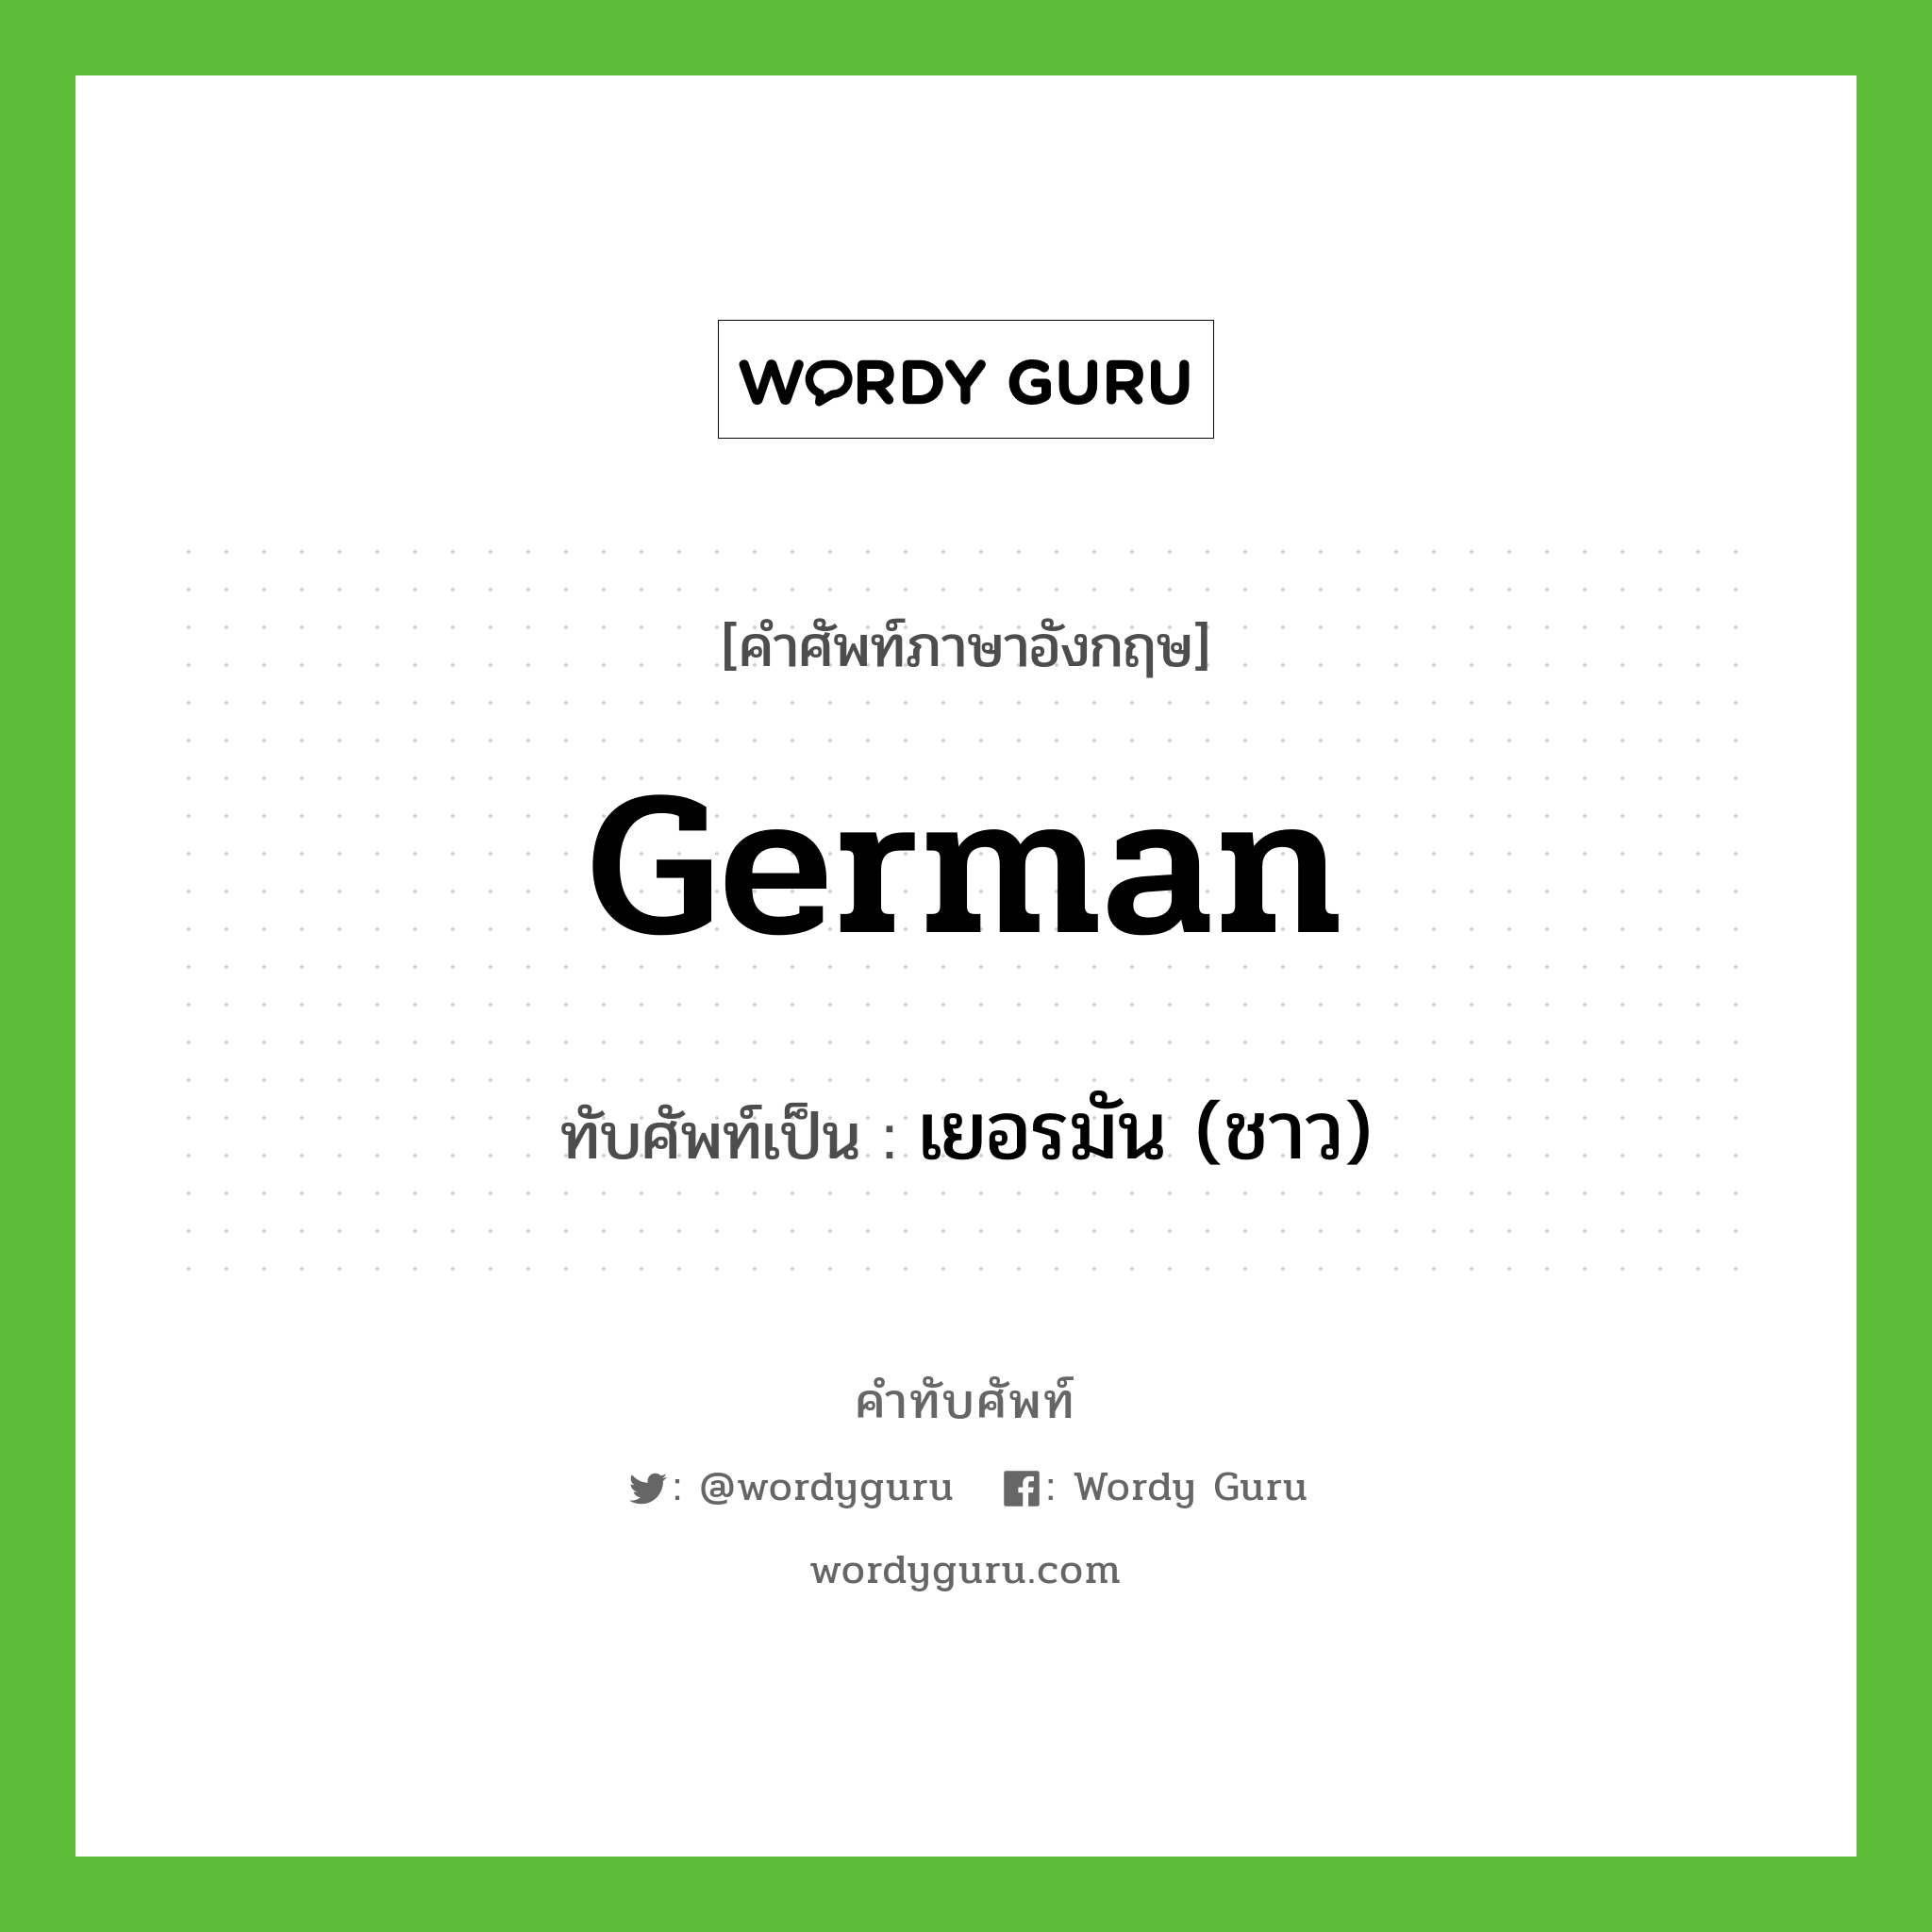 เยอรมัน (ชาว) เขียนอย่างไร?, คำศัพท์ภาษาอังกฤษ เยอรมัน (ชาว) ทับศัพท์เป็น German